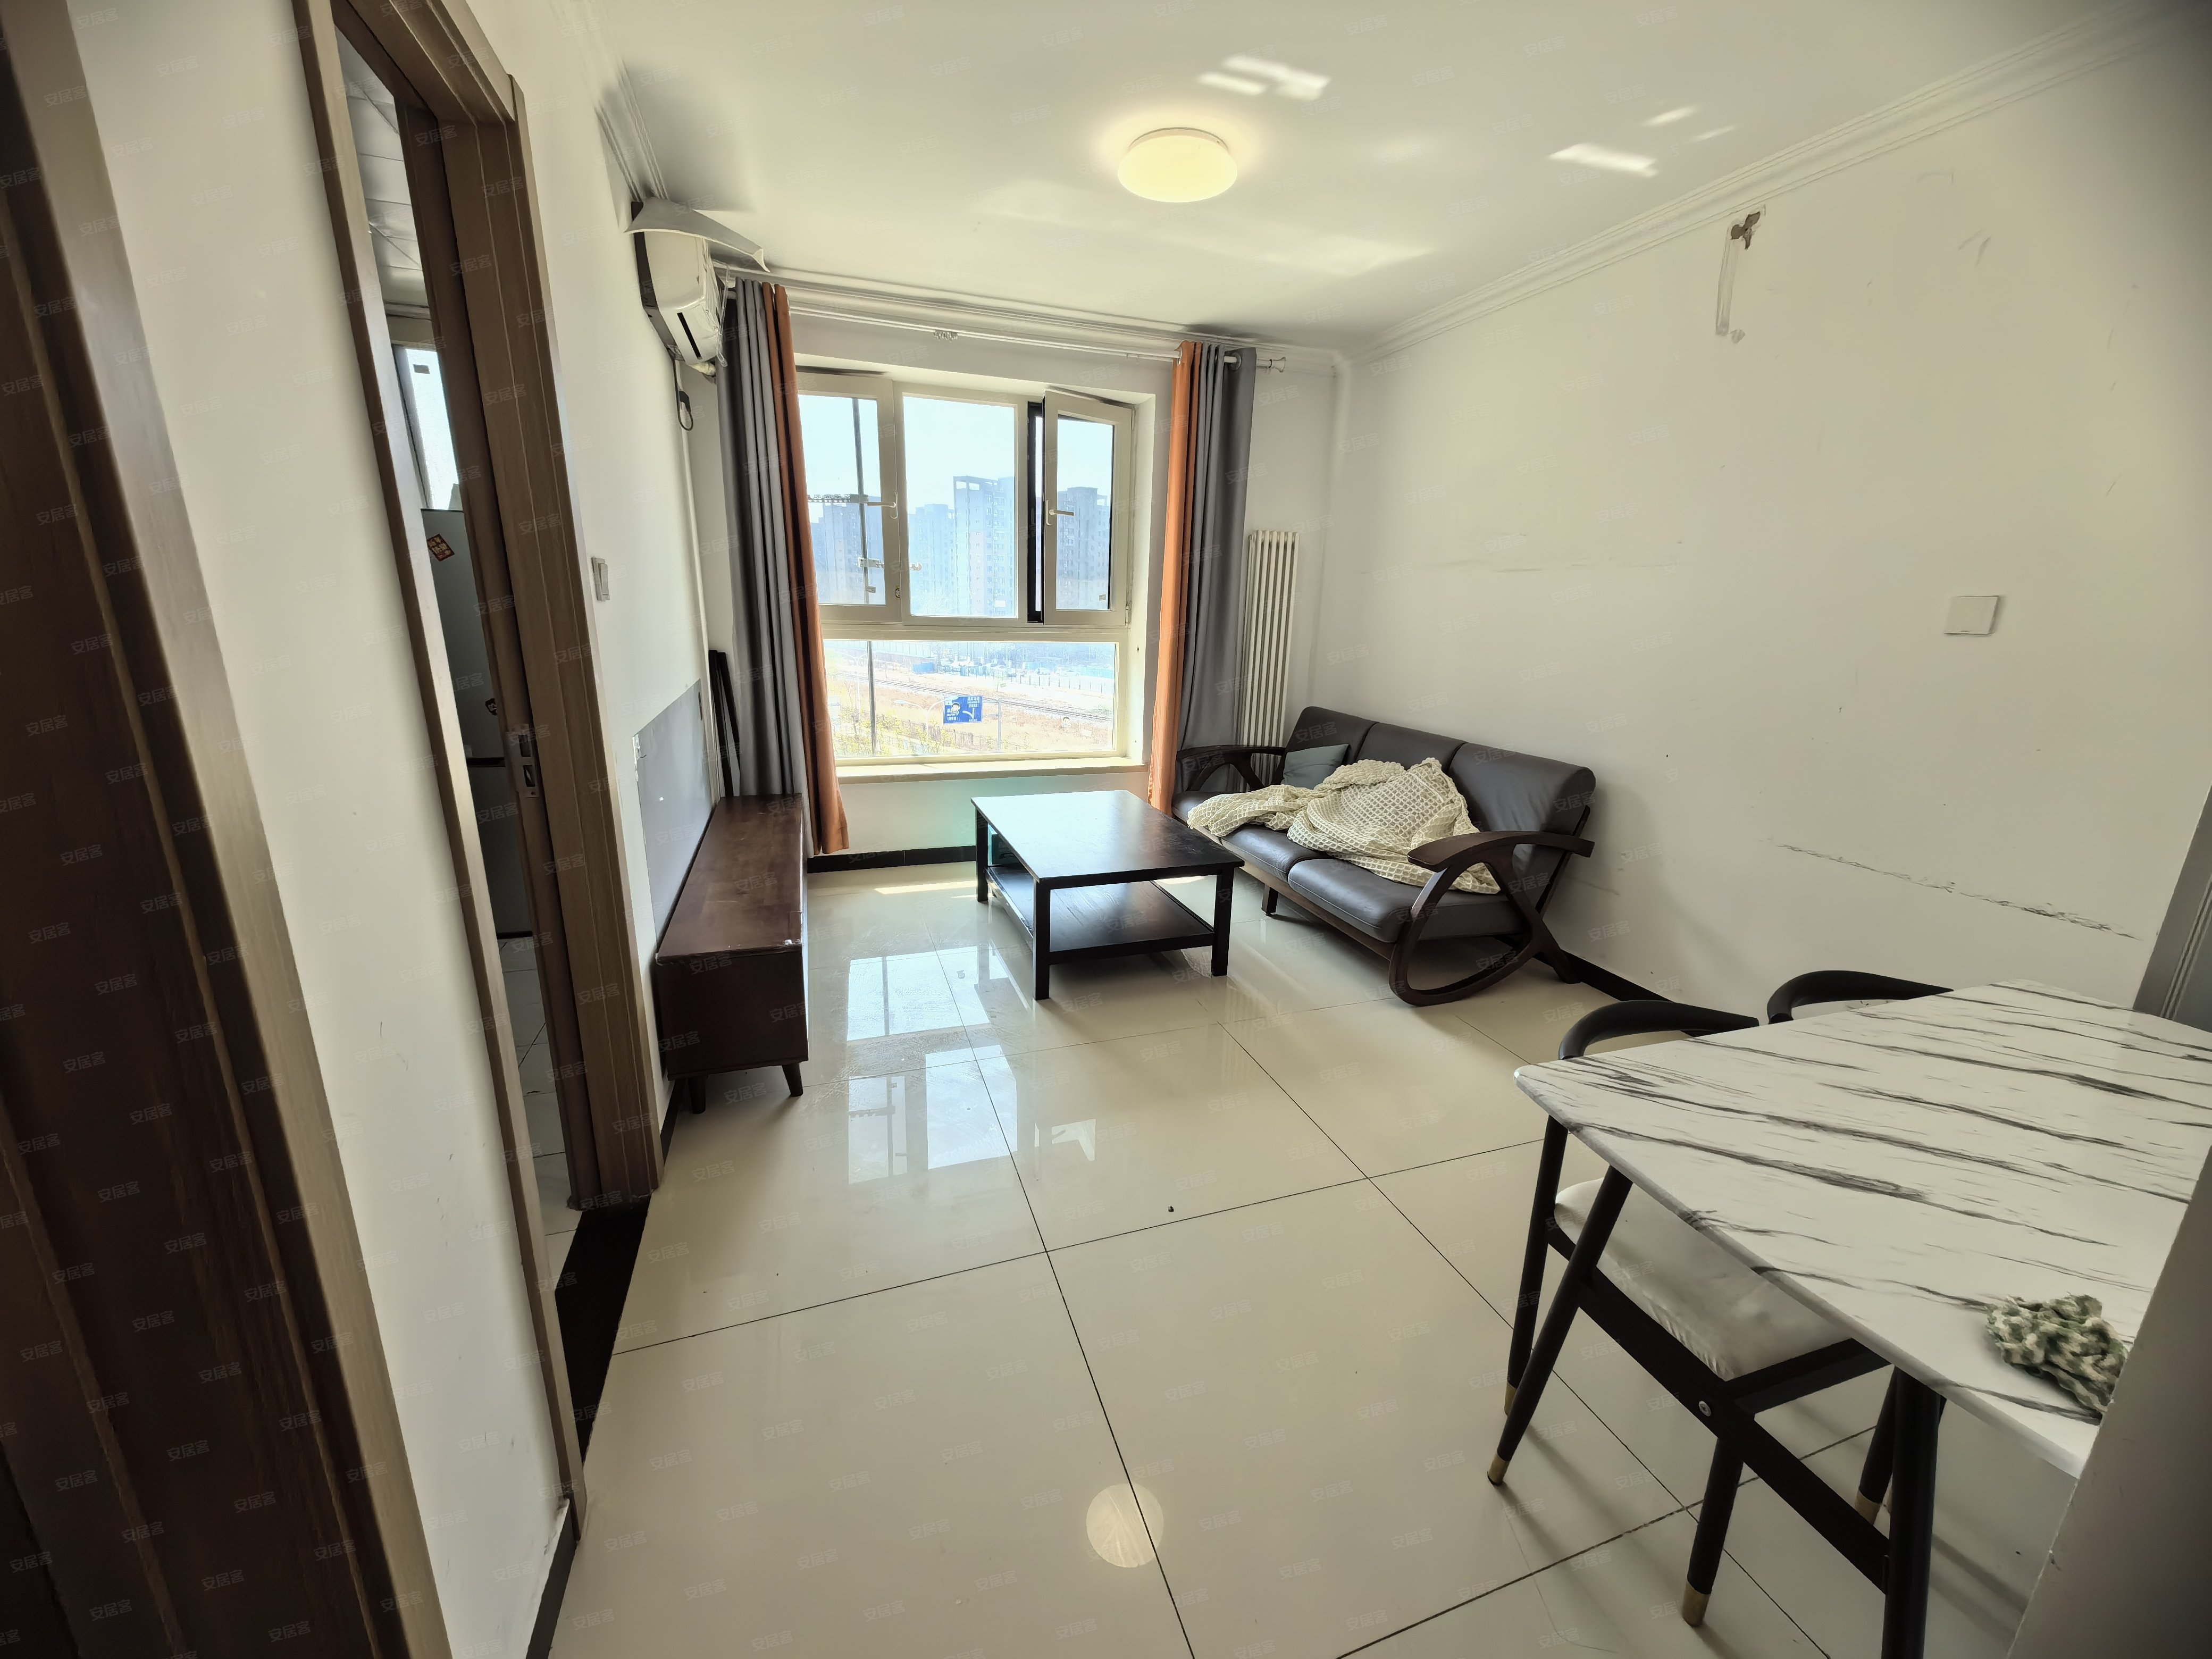 整租｜首月半价正规一居室，新房龤号线北运河西。